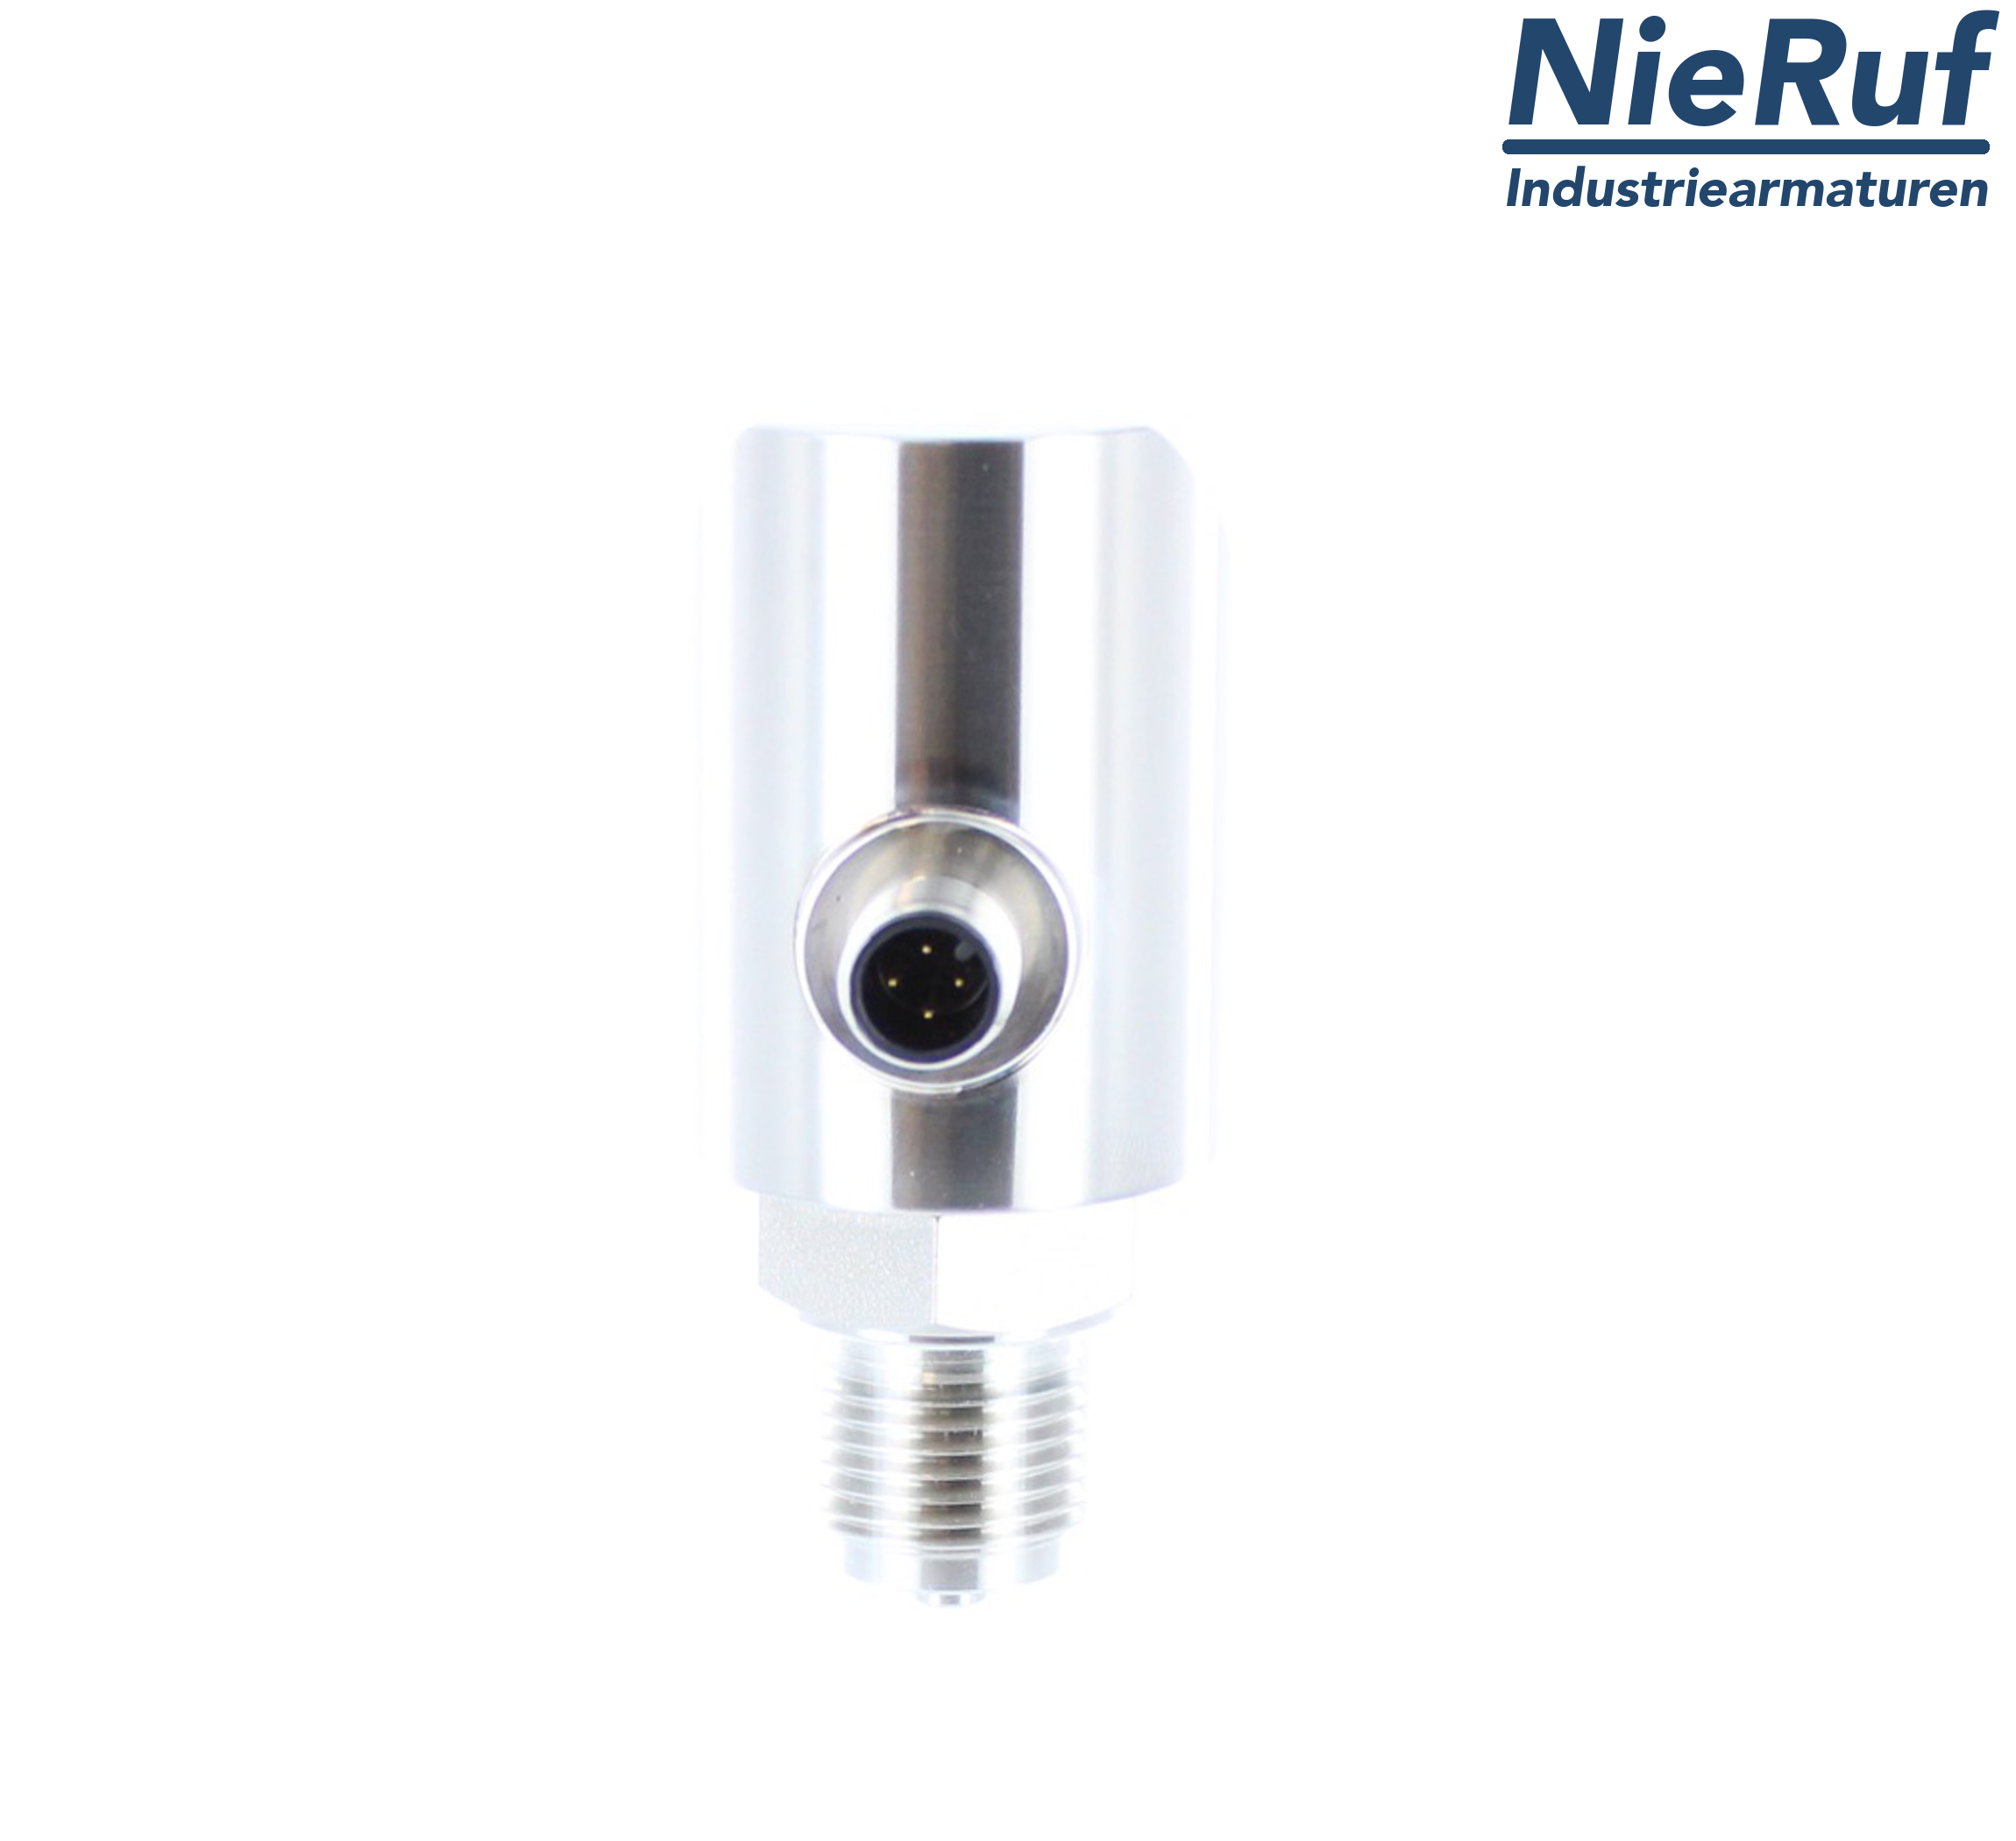 digital pressure sensor G 1/2" B 5-wire: 2xPNP, 1x4 - 20mA FPM 0,0 - 60,0 bar